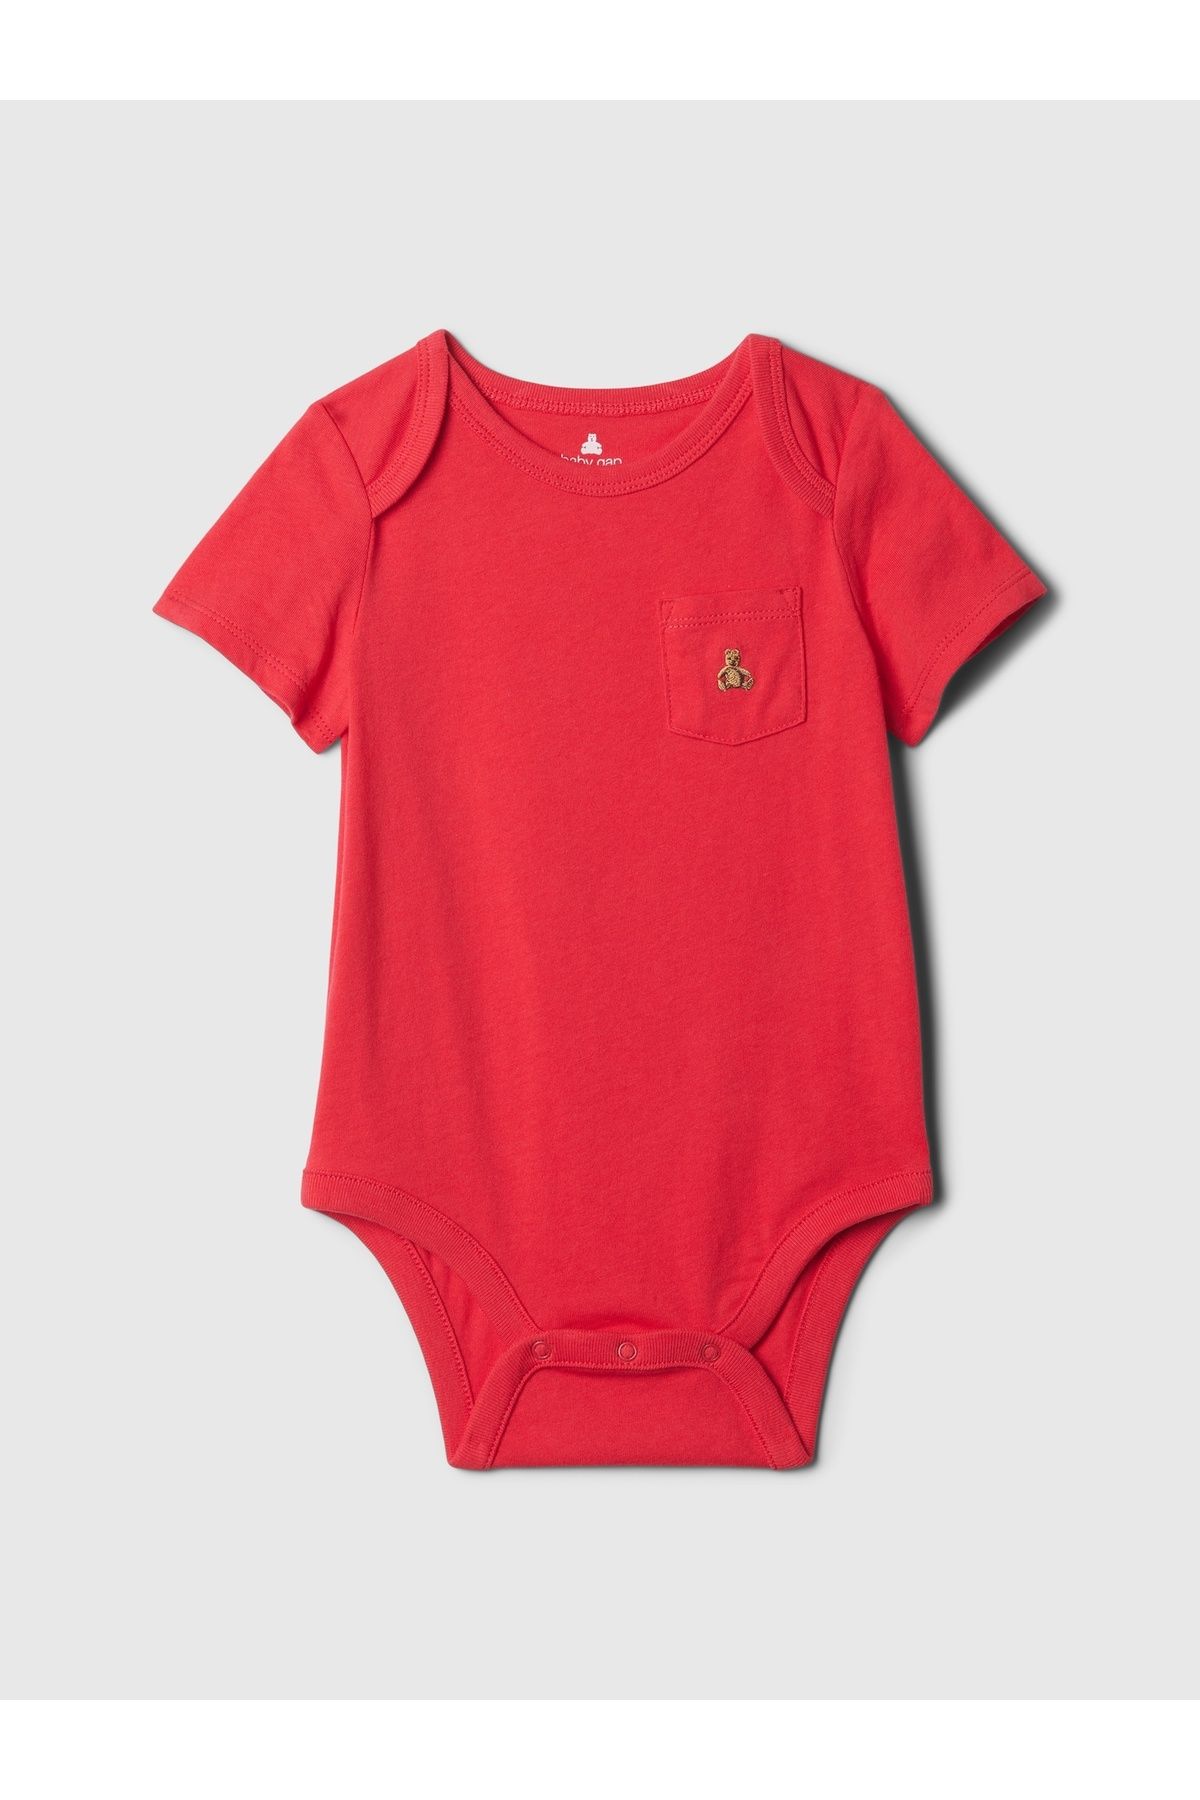 GAP Erkek Bebek Kırmızı Brannan Bear İşlemeli Bodysuit